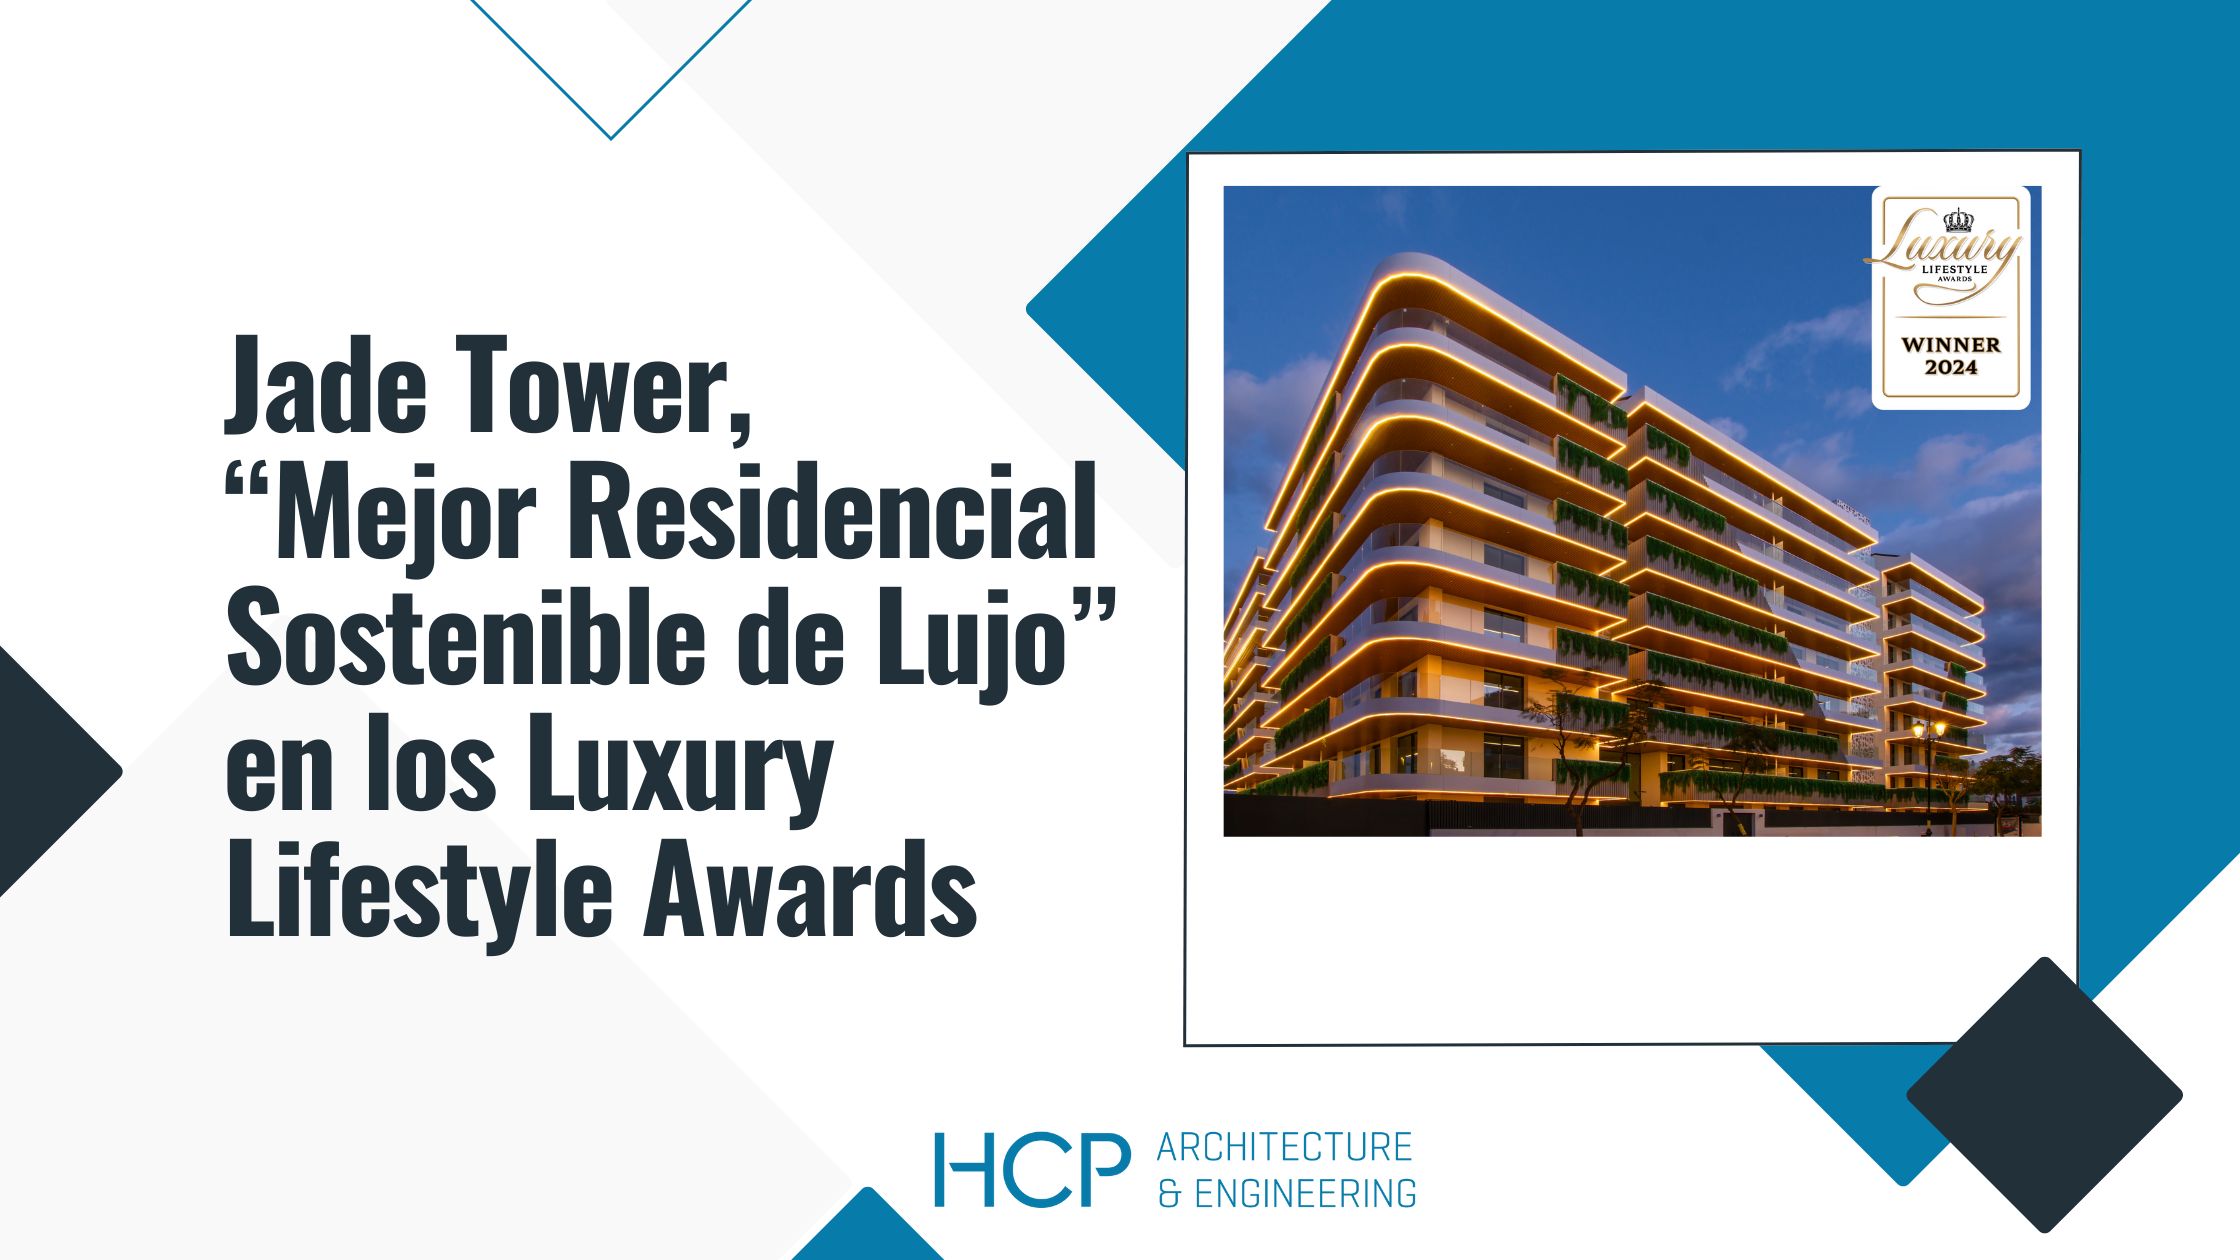 Jade Tower de HCP premiado a "Mejor Residencial Sostenible de Lujo" en los Luxury Lifestyle Awards